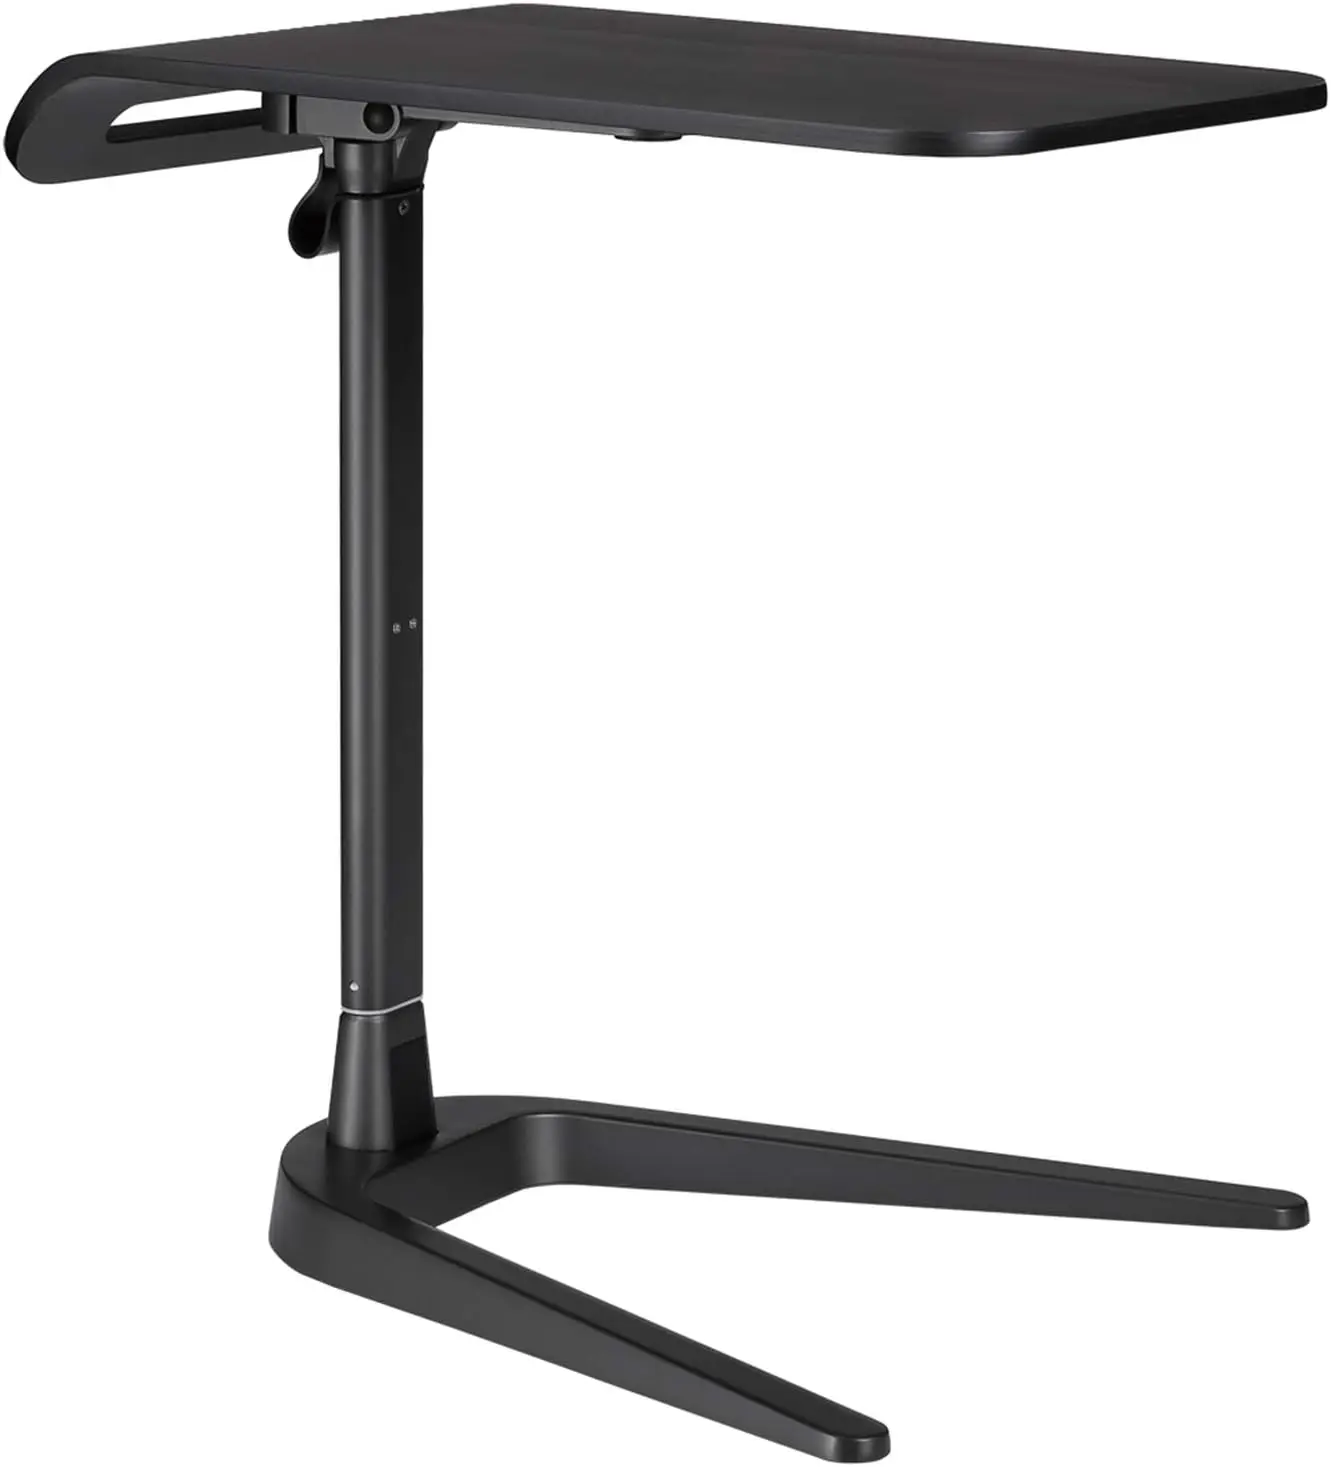 

Регулируемый по высоте столик для дивана, складной столик для ноутбука, компьютерный столик C-образной формы, напольный столик для детской комнаты, кофейный столик